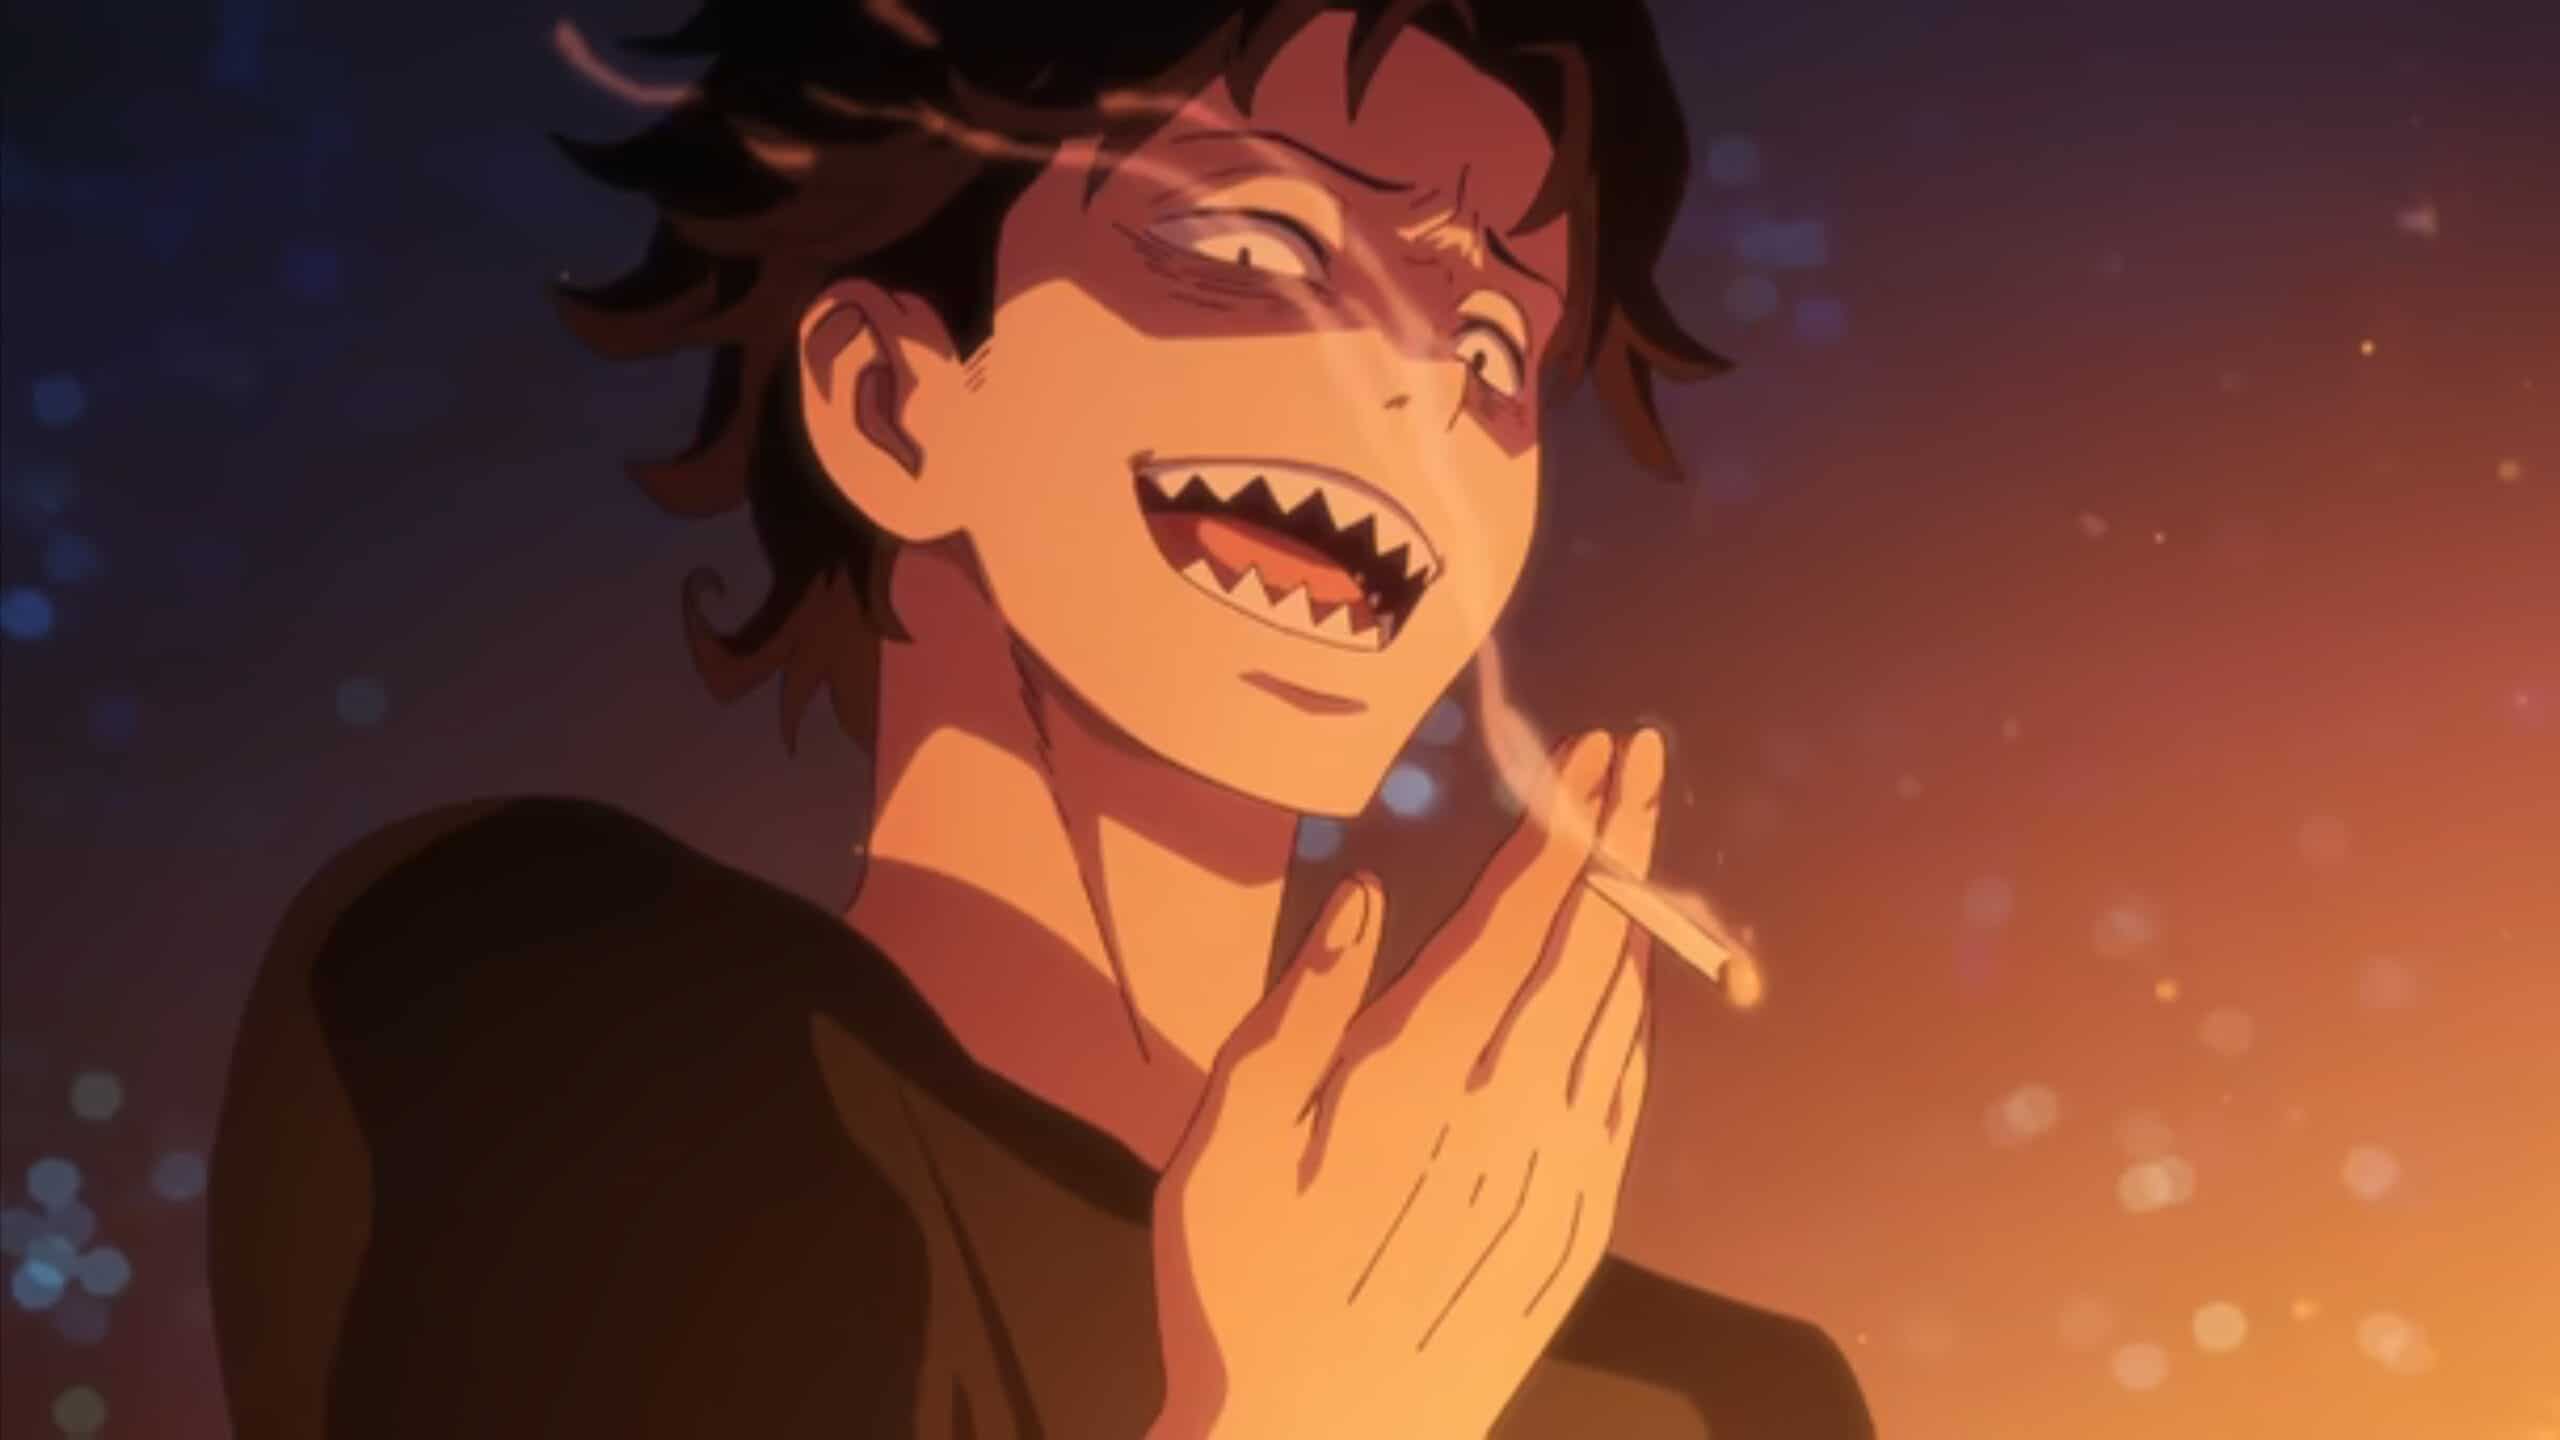 Higurashi (Okamoto Nobuhiko) laughing maniacally